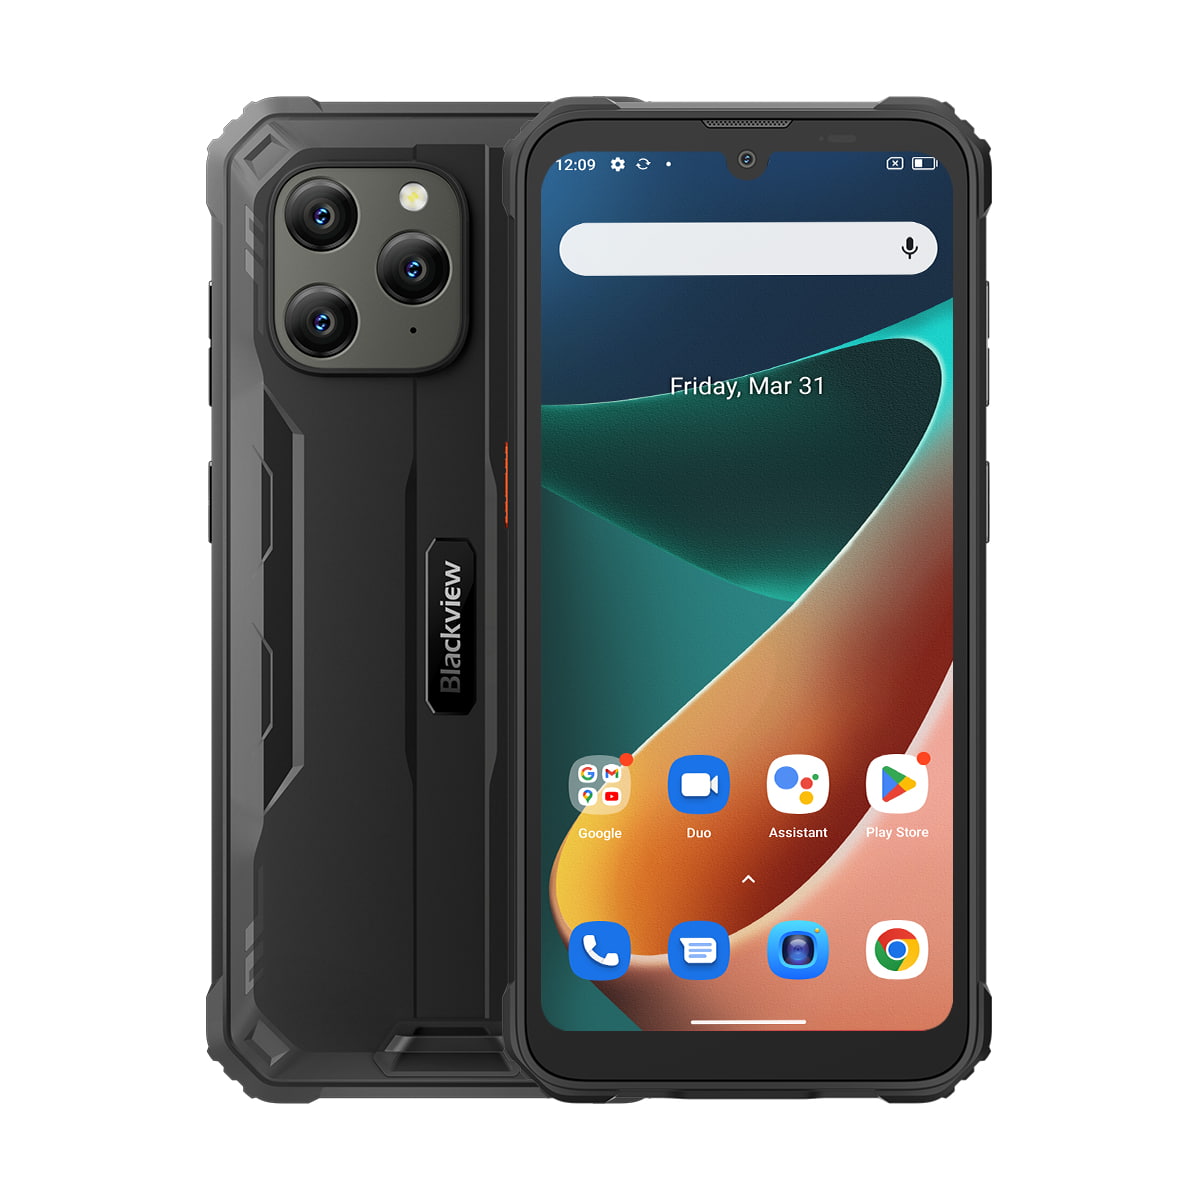 Blackview BV5300 Pro, Smartphone étanche - Nouveauté 2023 - Android 12, Photo 13 Mpx, Mémoire de 4Go, 64Go de RAM, NFC, Charge inversée, 6 580 mAh